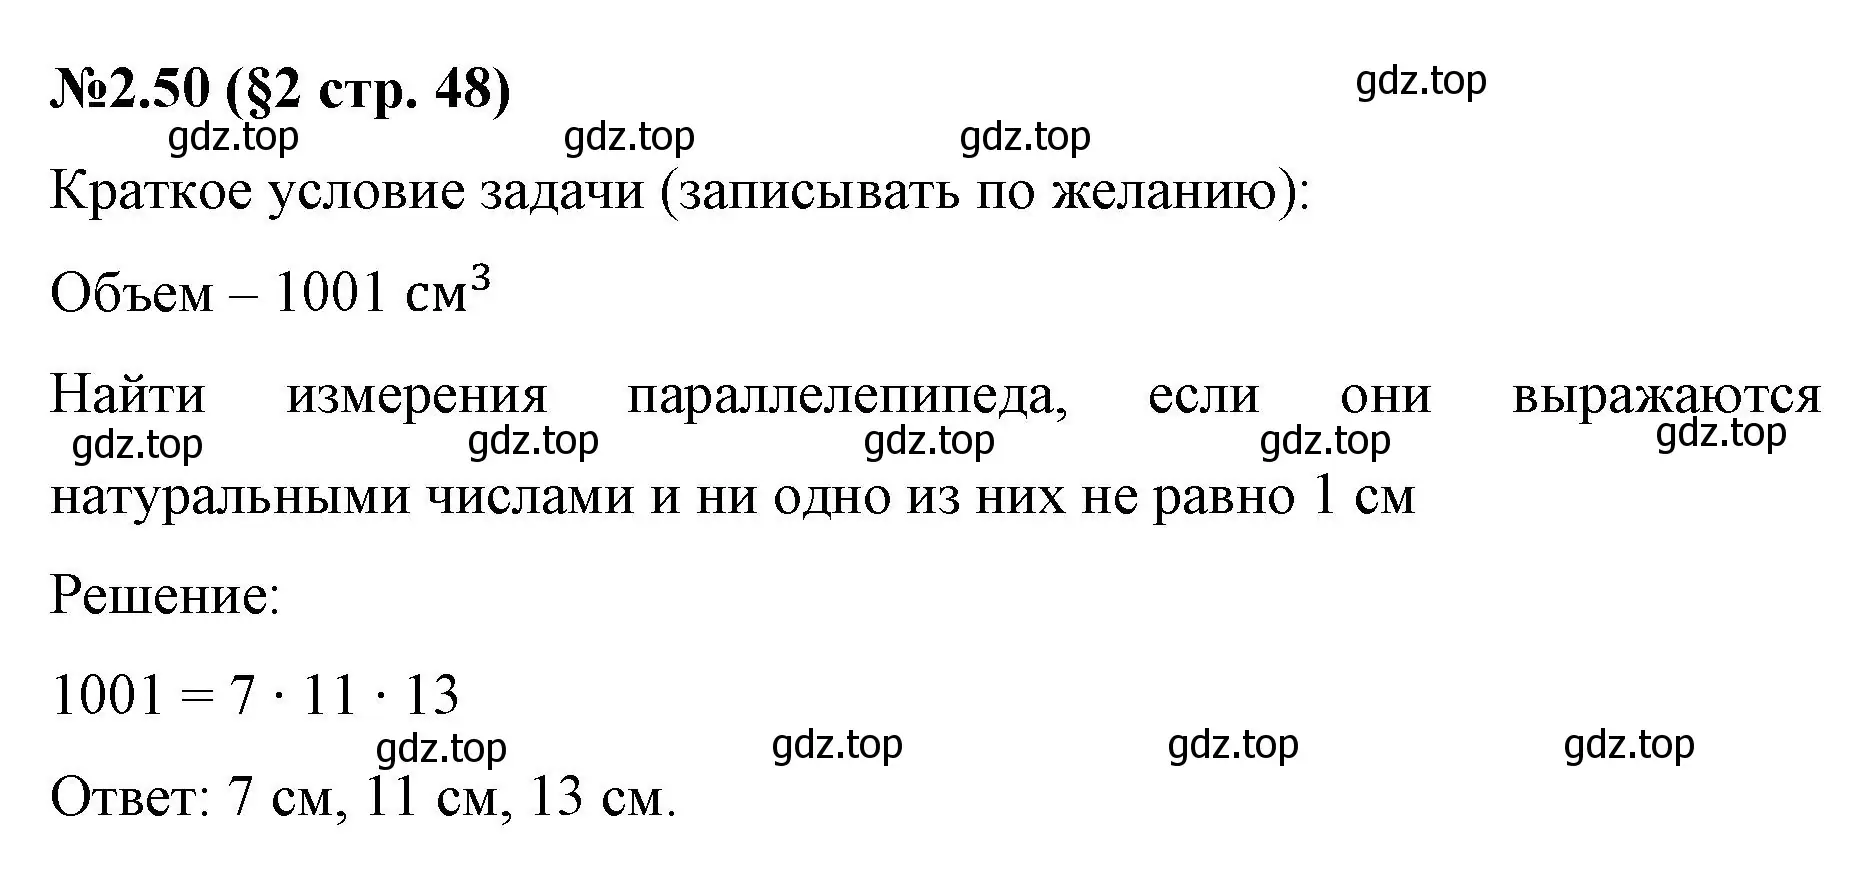 Решение номер 2.50 (страница 48) гдз по математике 6 класс Виленкин, Жохов, учебник 1 часть